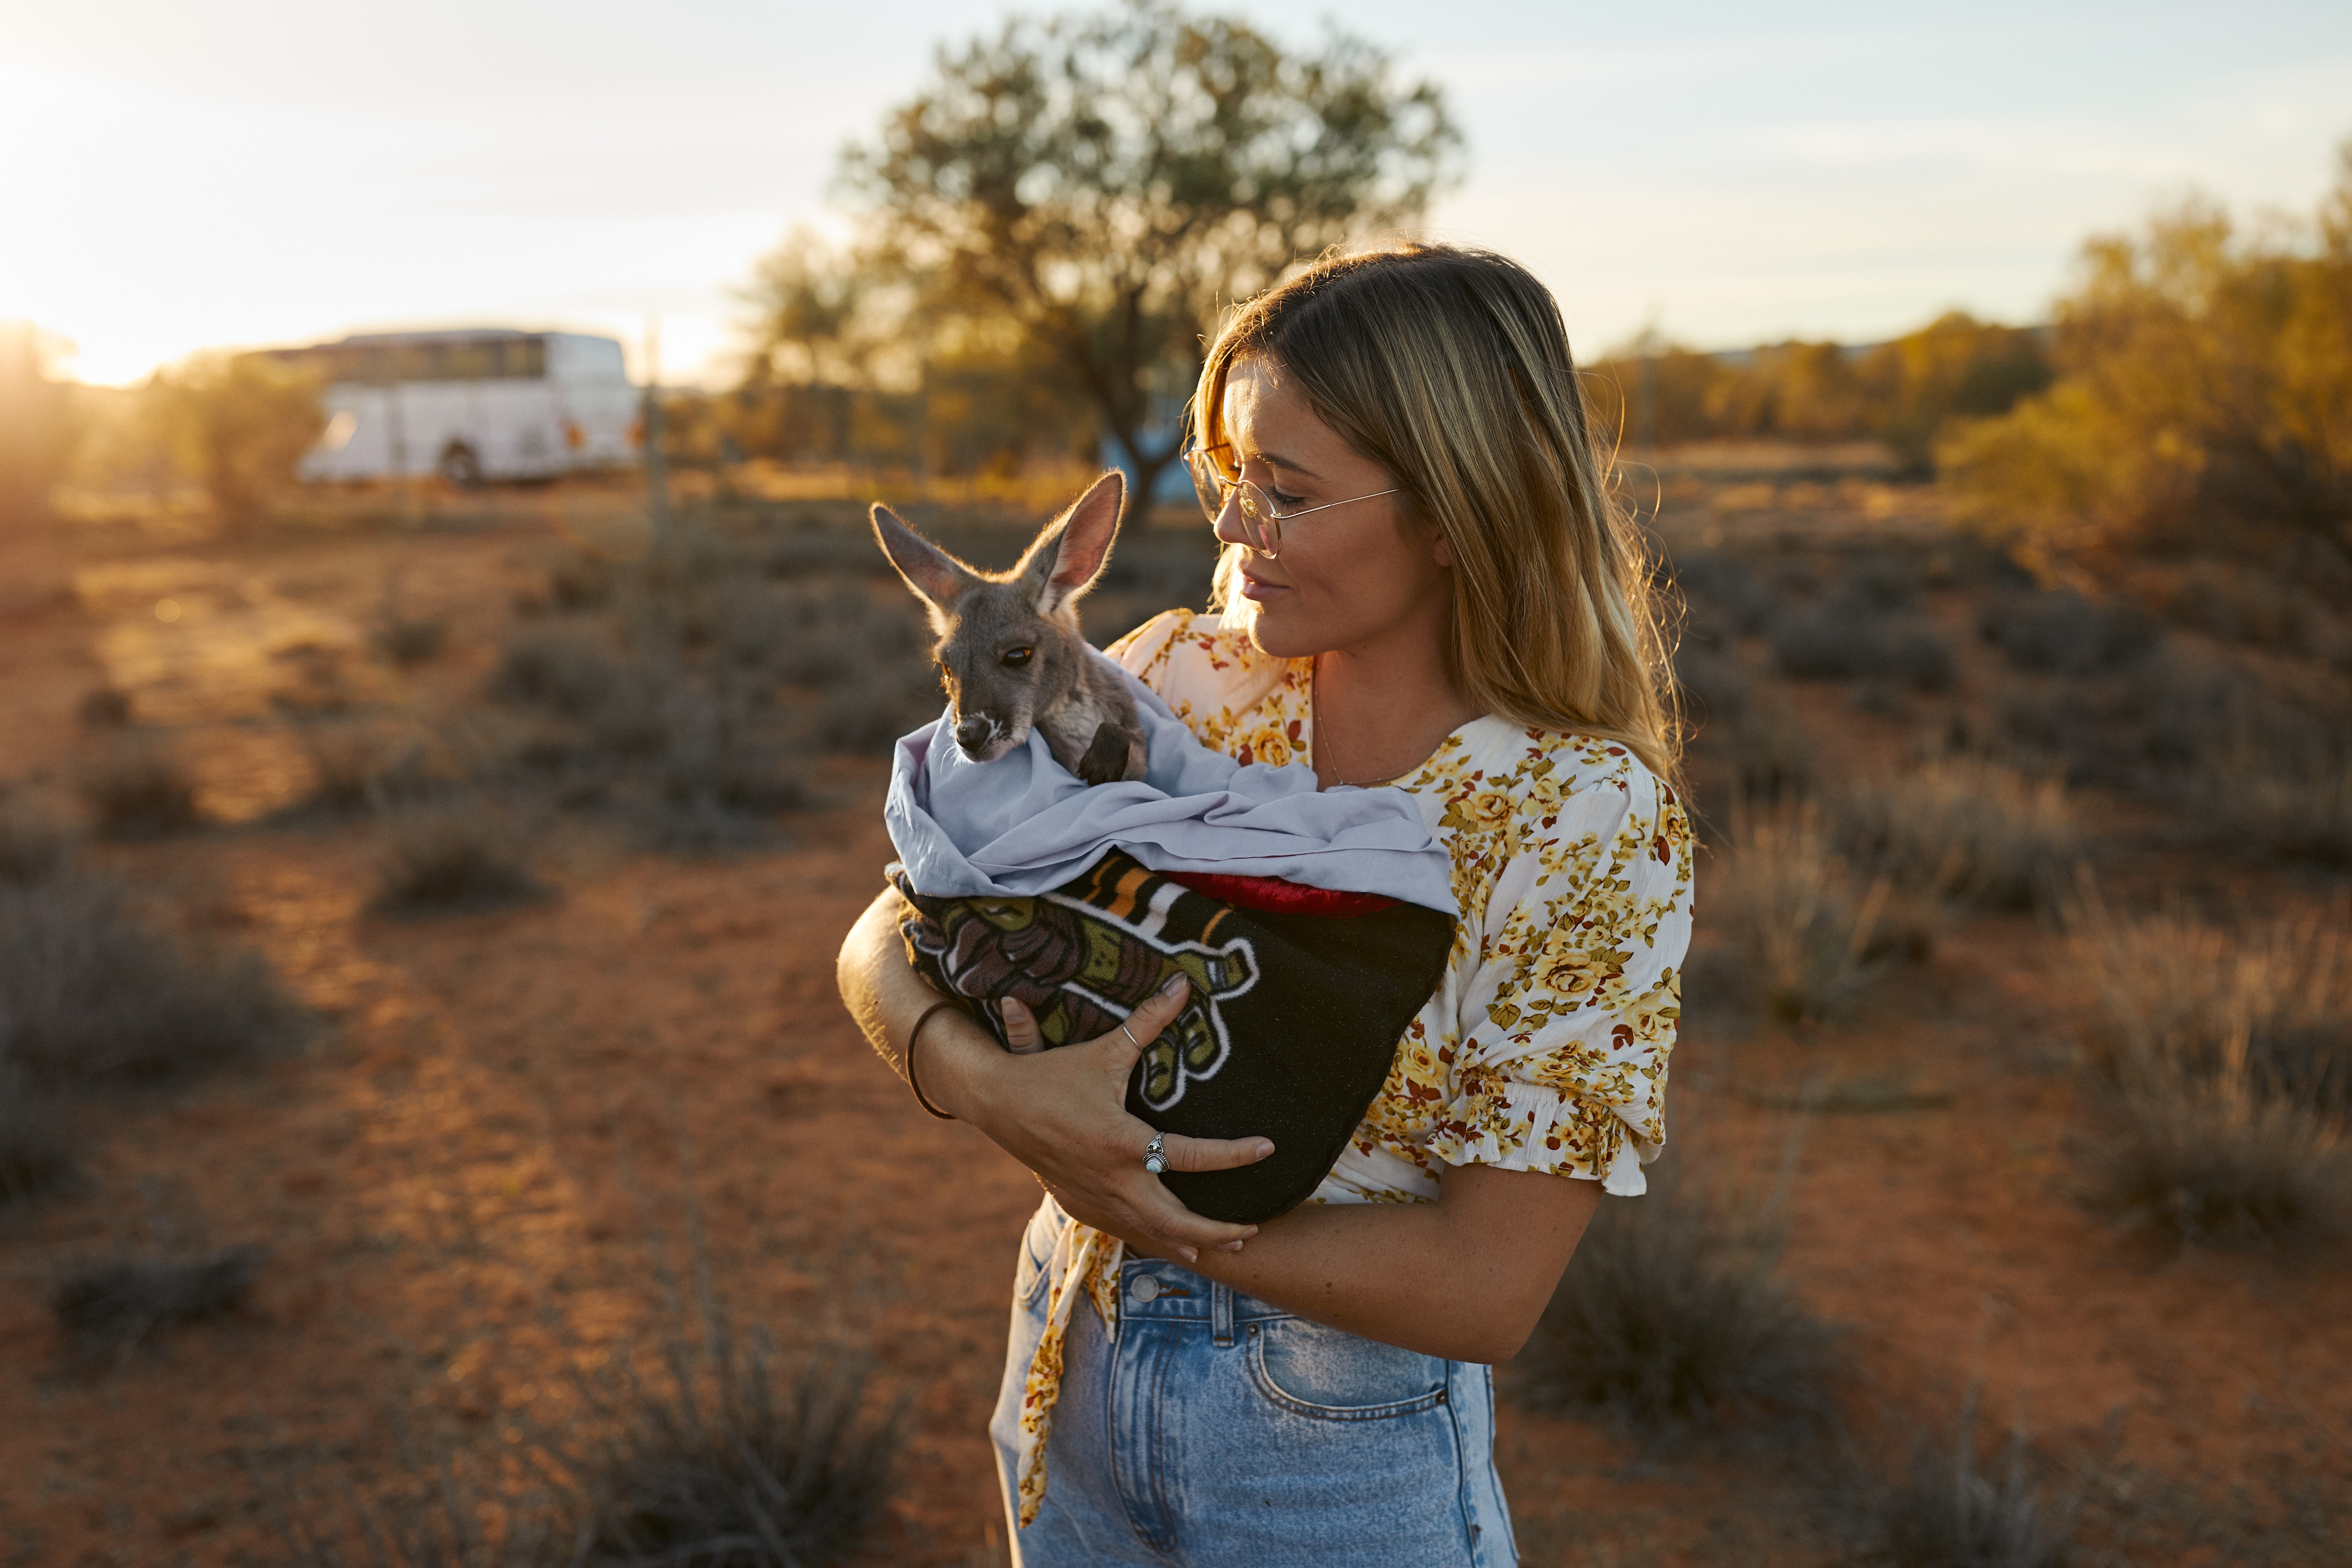 Where to meet Australia's cutest animals - Tourism Australia